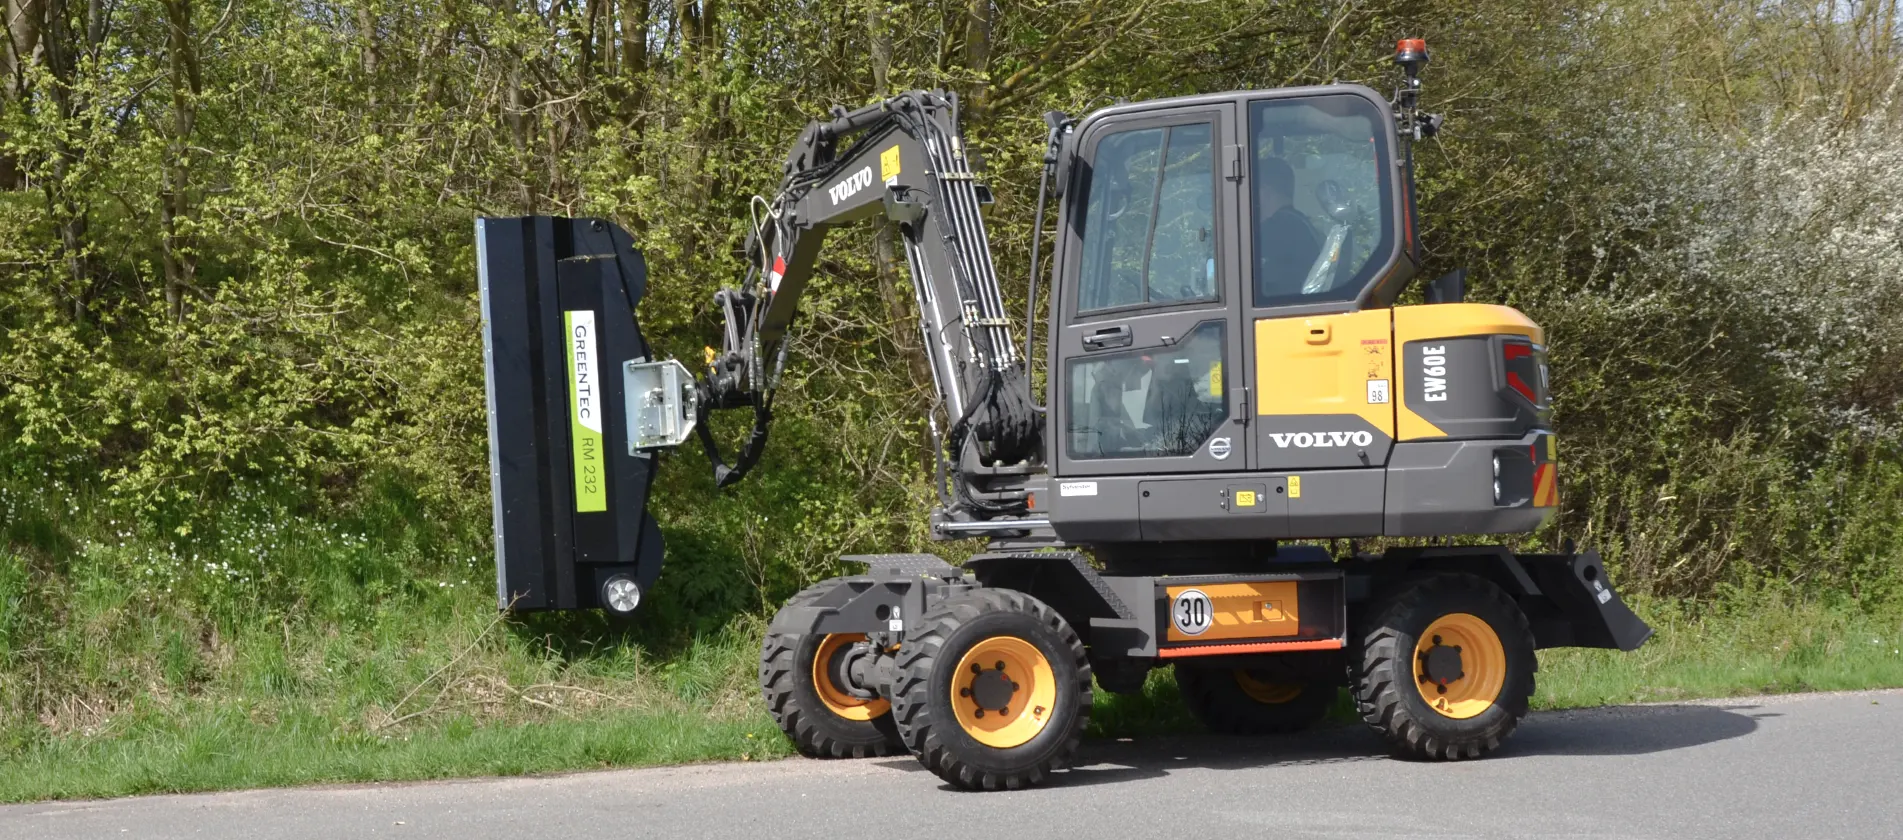 Hedge mulcher mounted on Volvo excavator